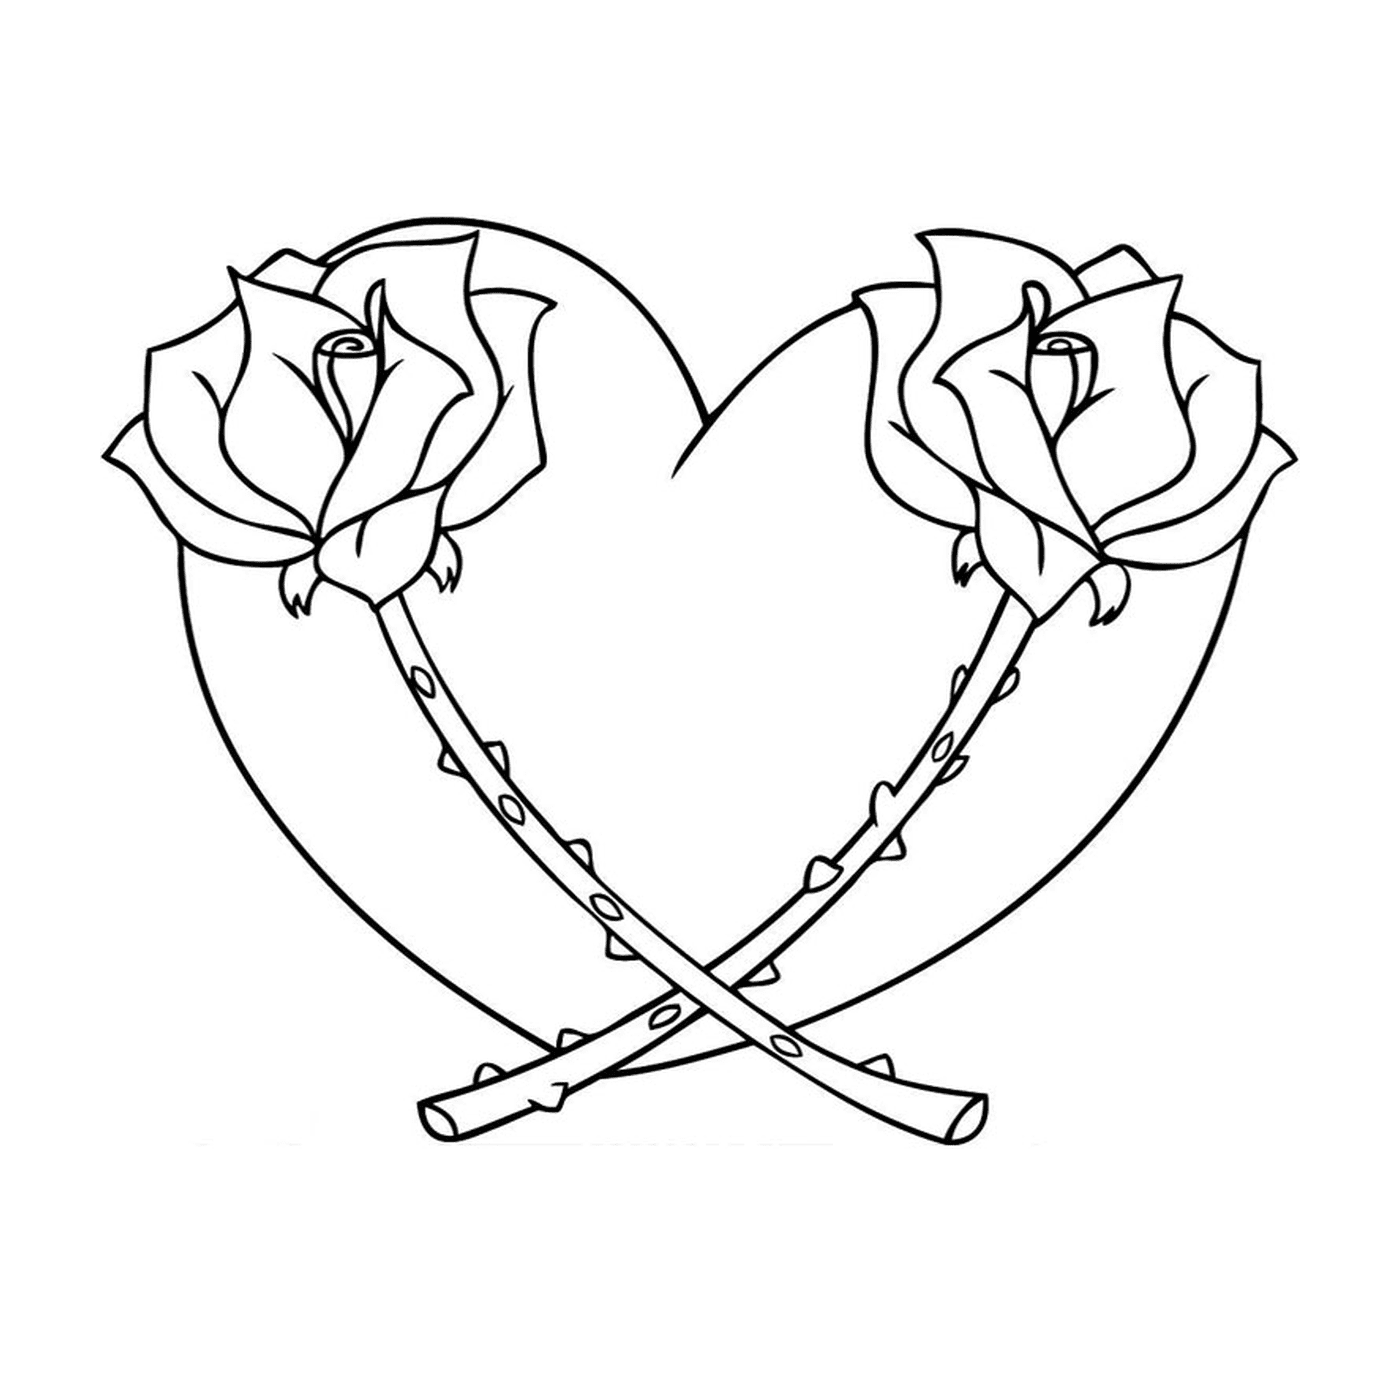  Duas rosas em forma de coração 